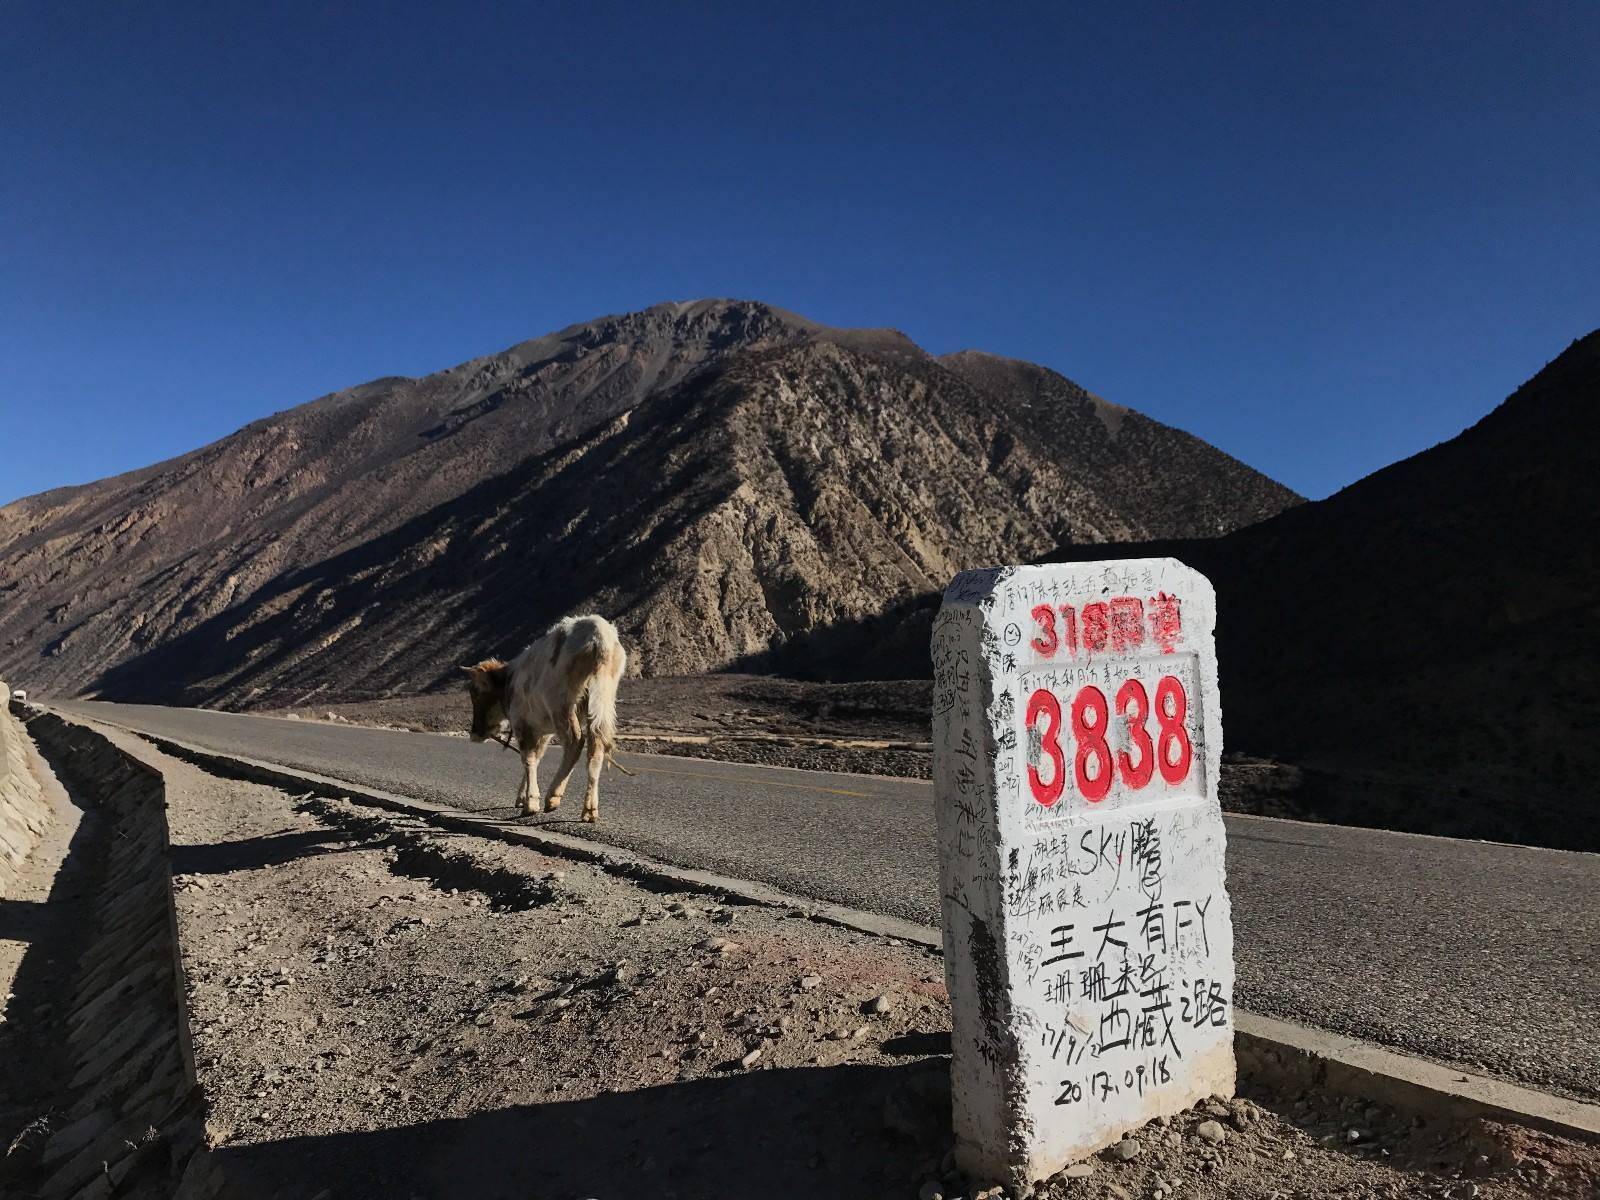 318川藏线,一条被誉为"中国人的景观大道"的公路,绝美的景色一直